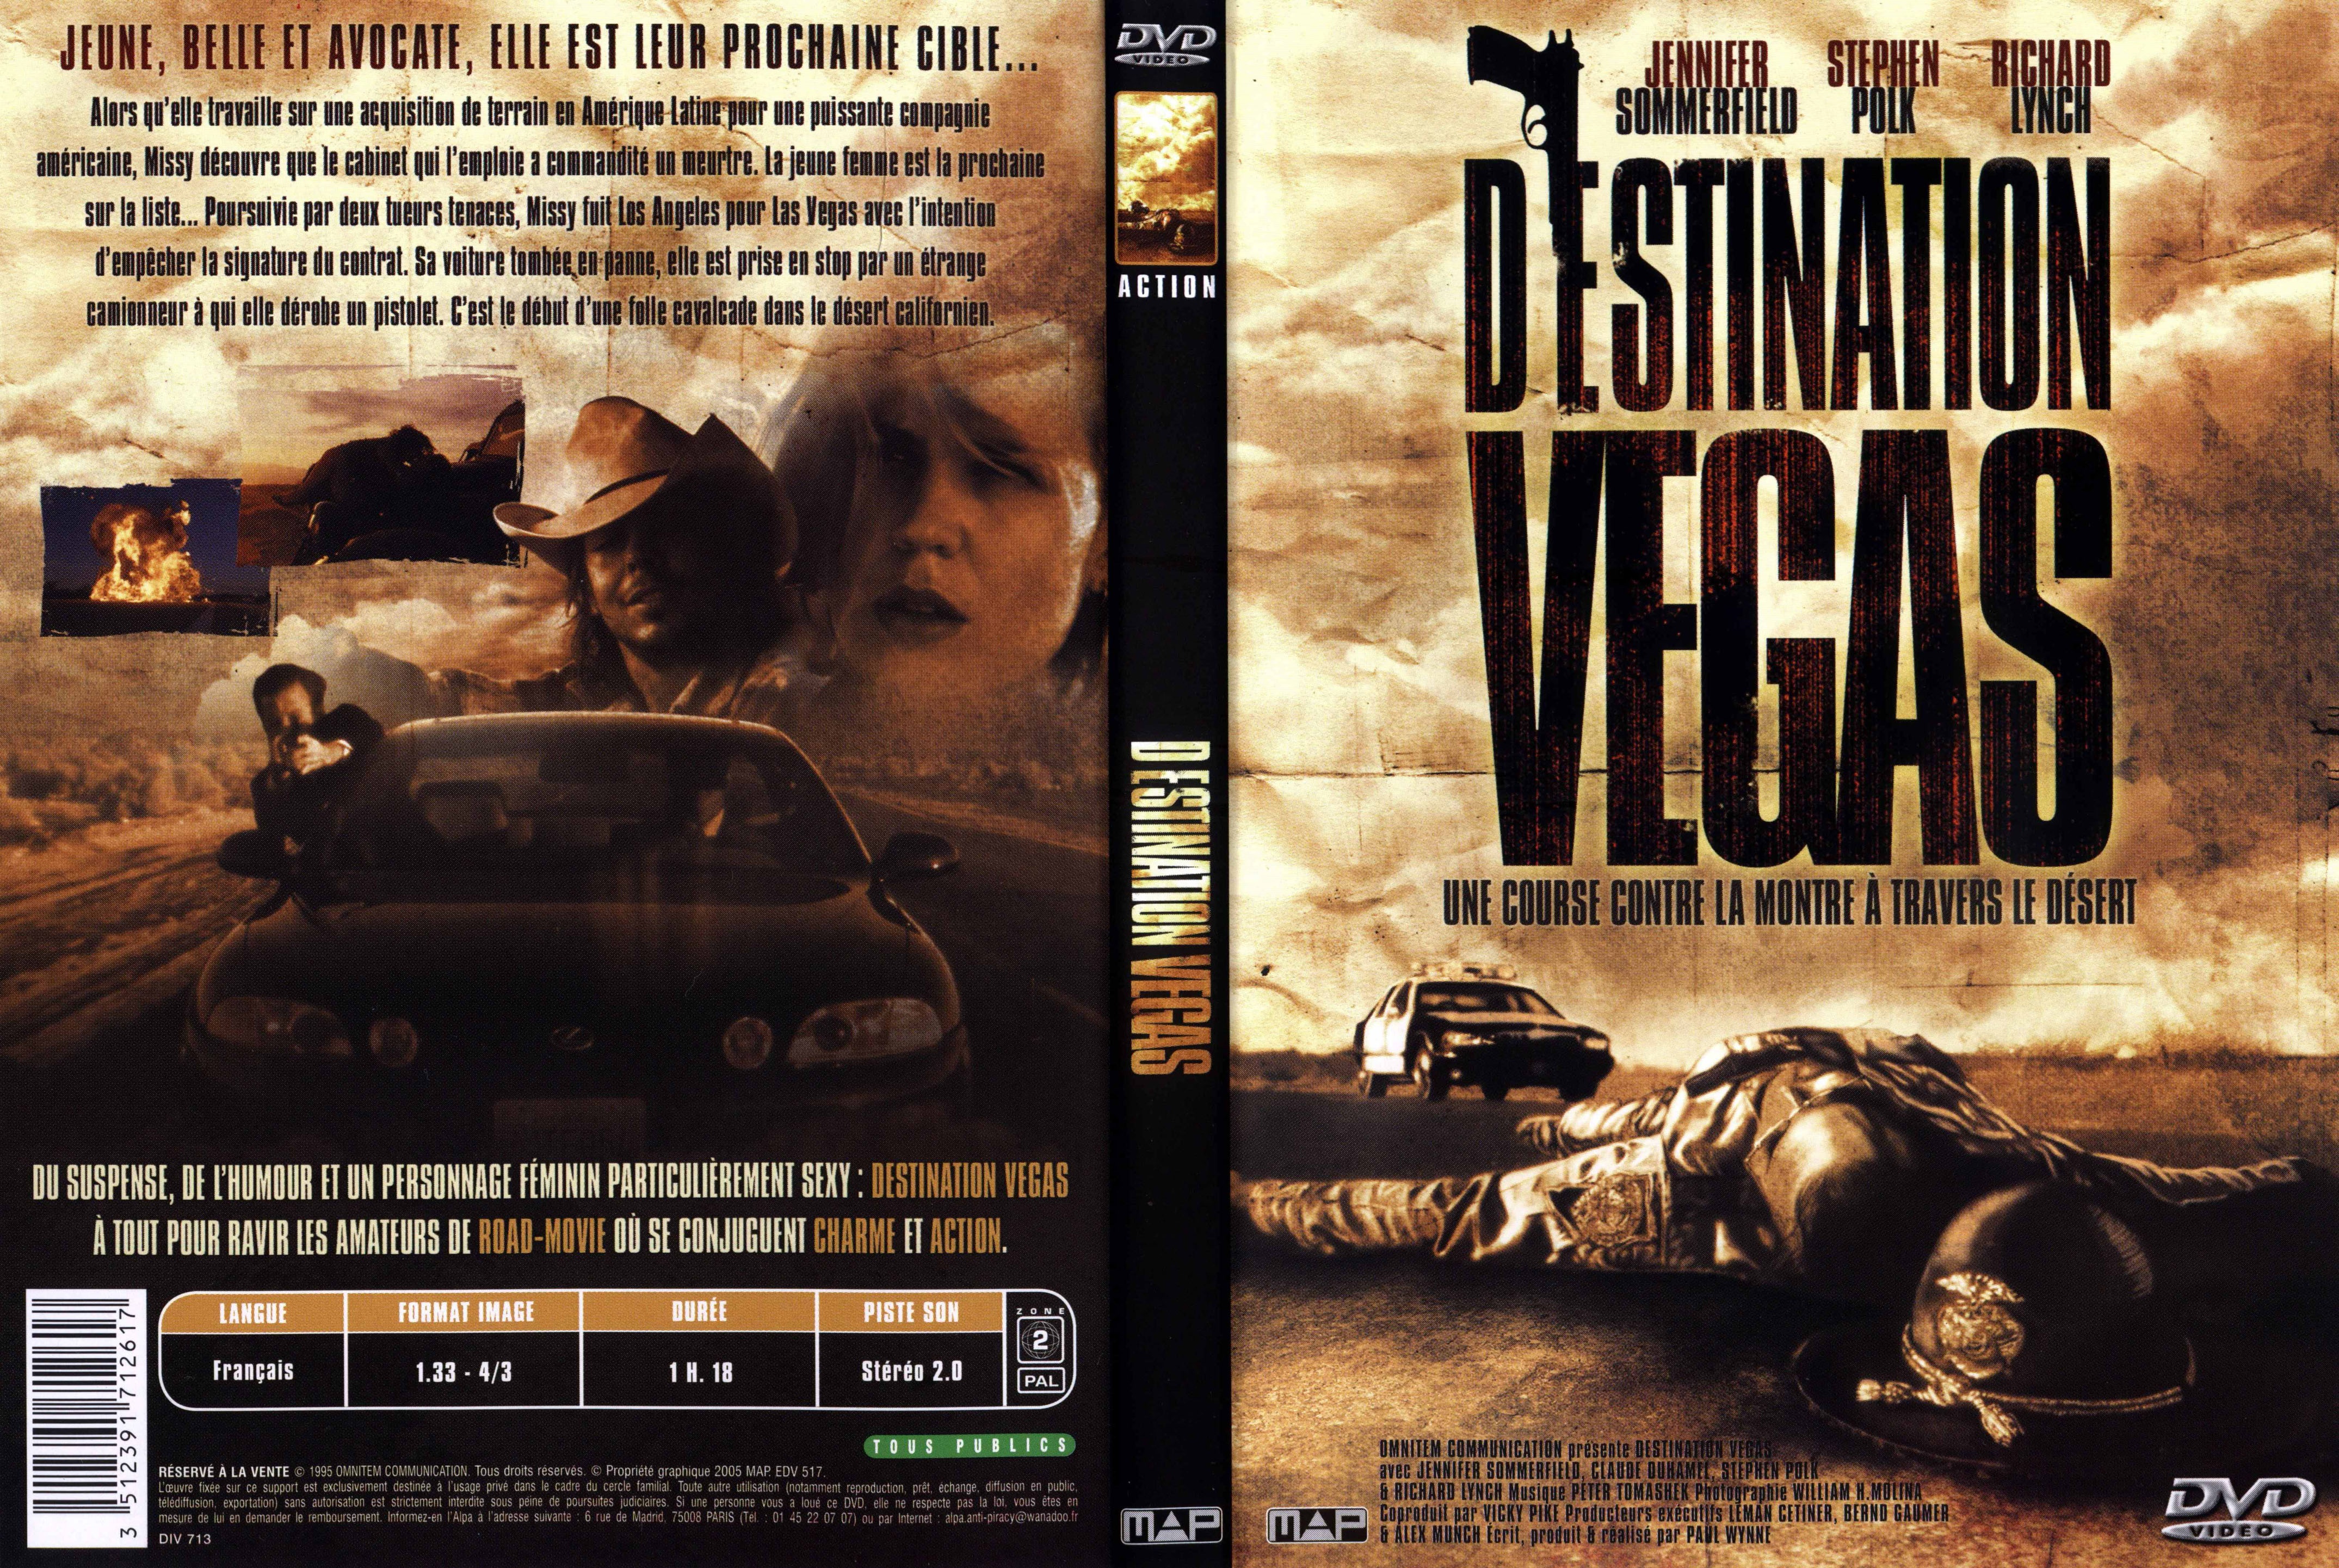 Jaquette DVD Destination Vegas